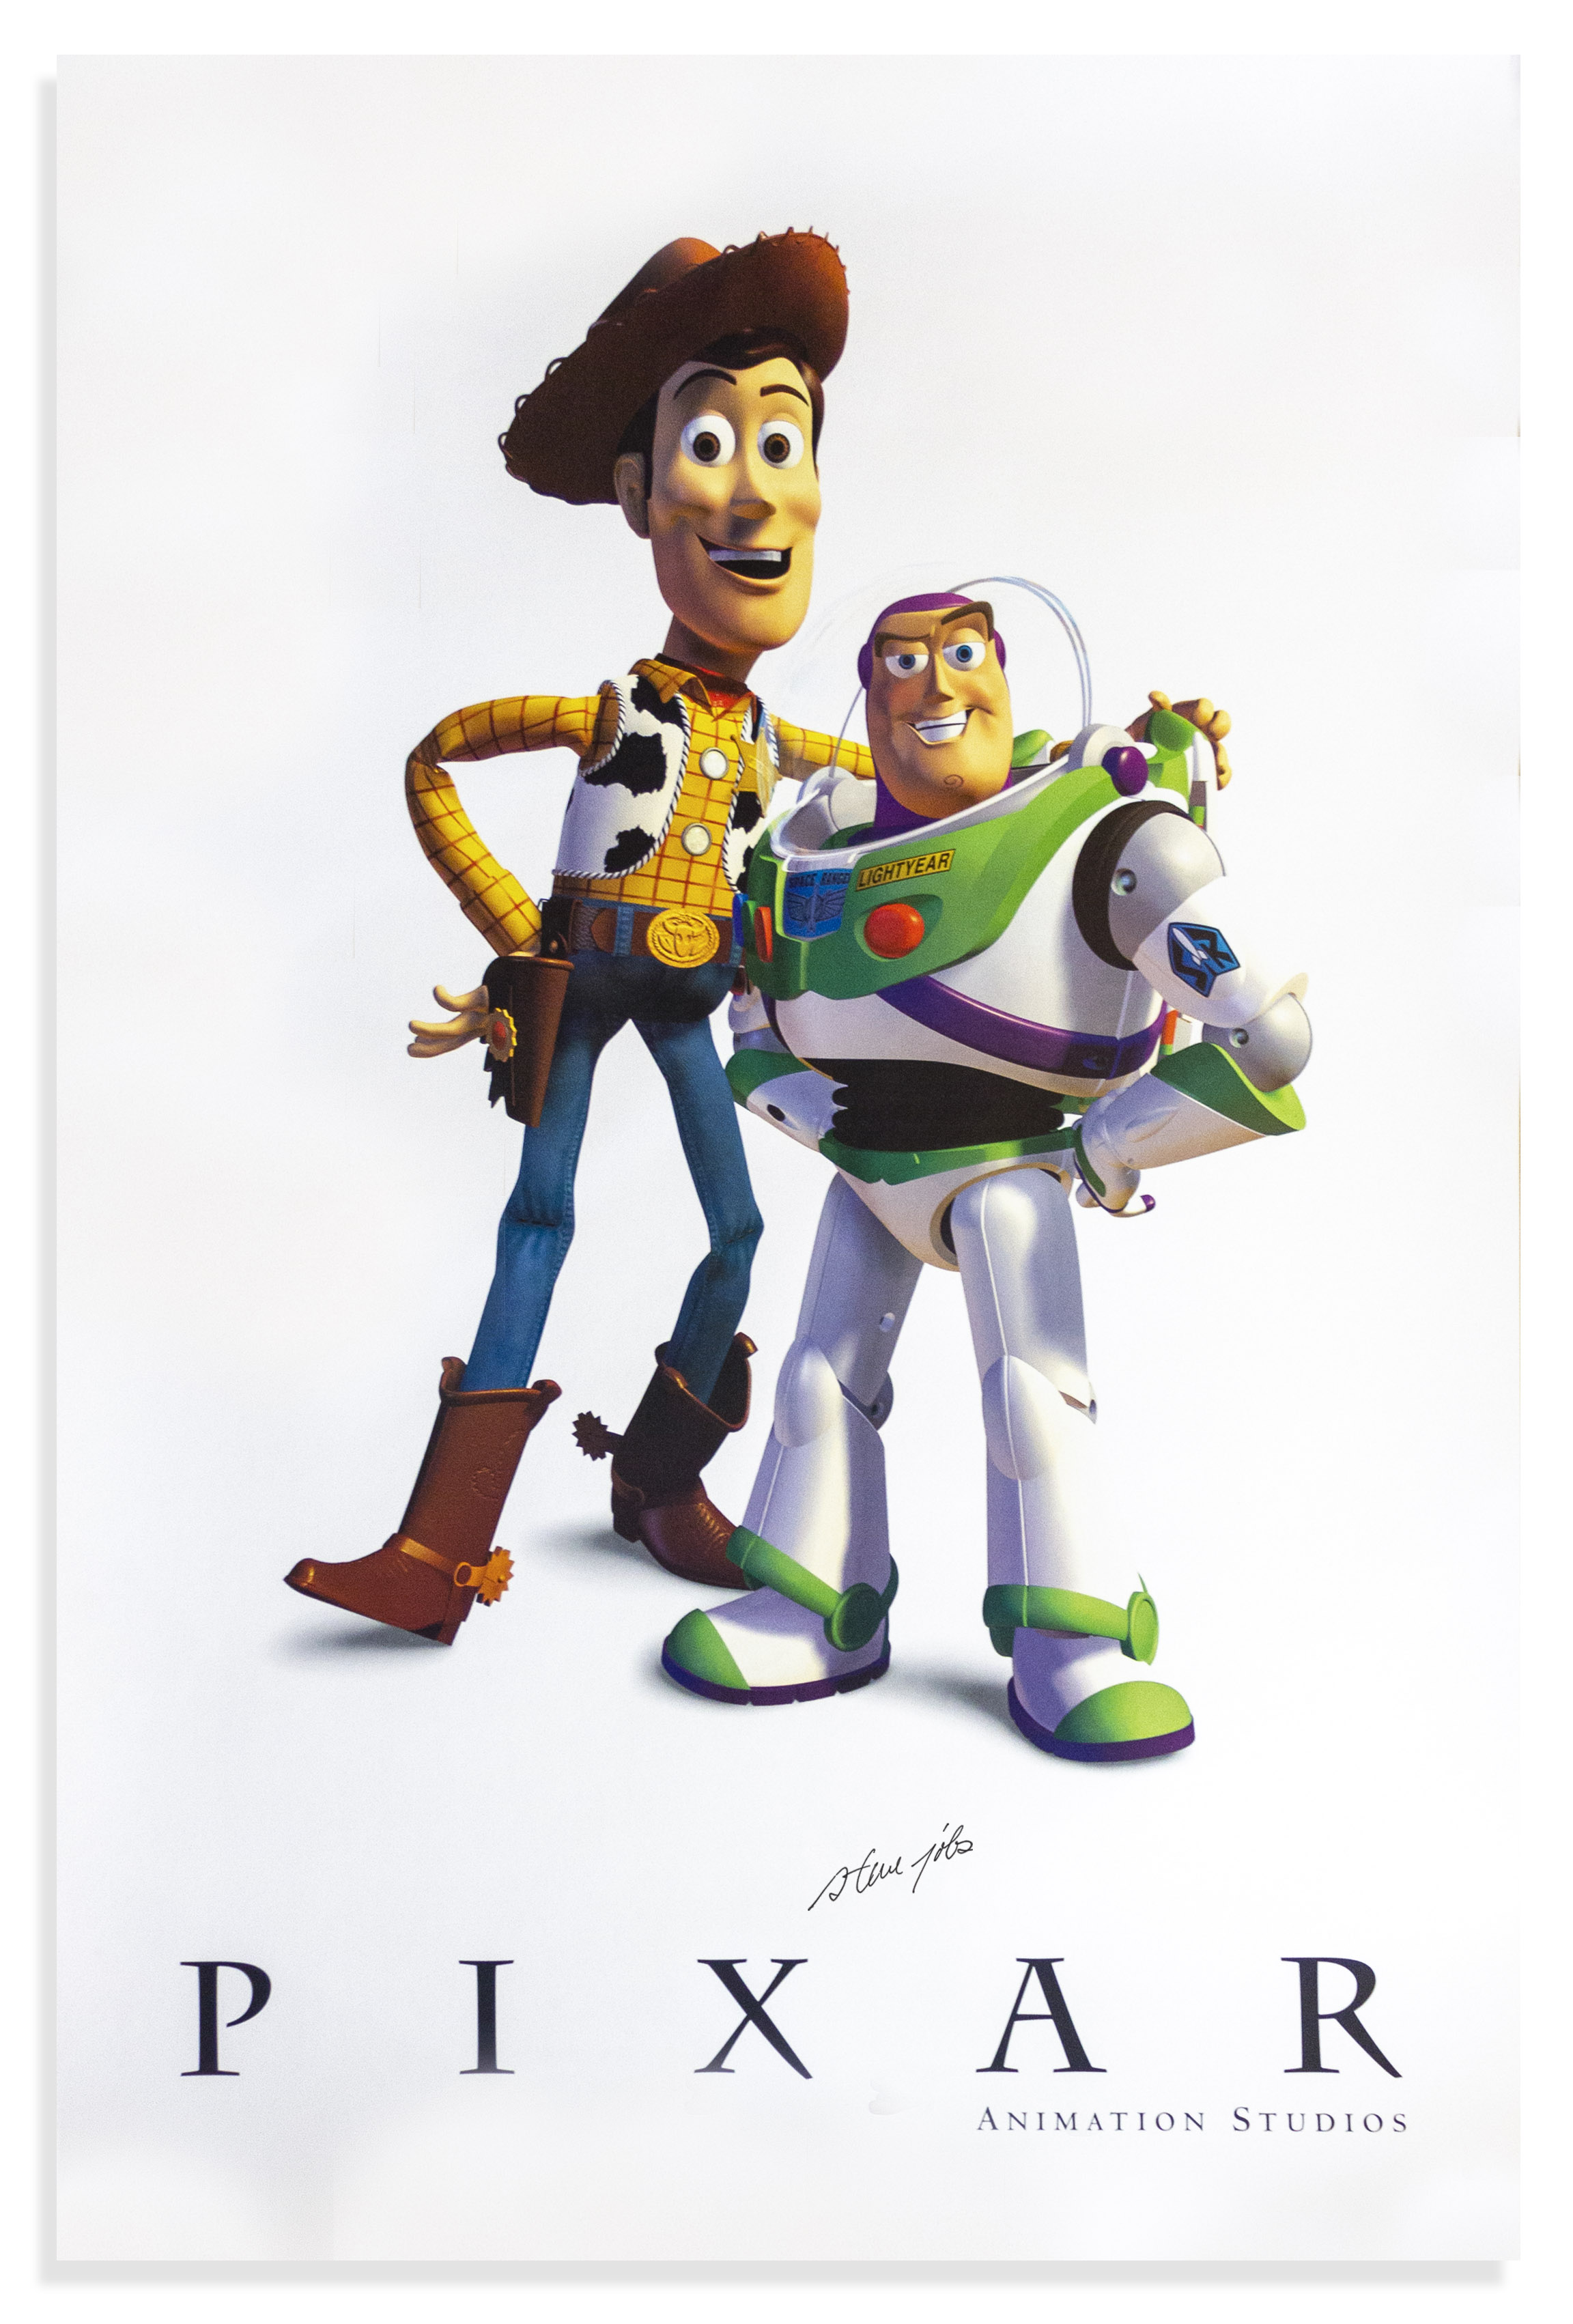 Τιμή εκκίνησης τα $25 χιλ. για ένα πόστερ Toy Story με υπογραφή του Τζομπς - Φωτογραφία 2